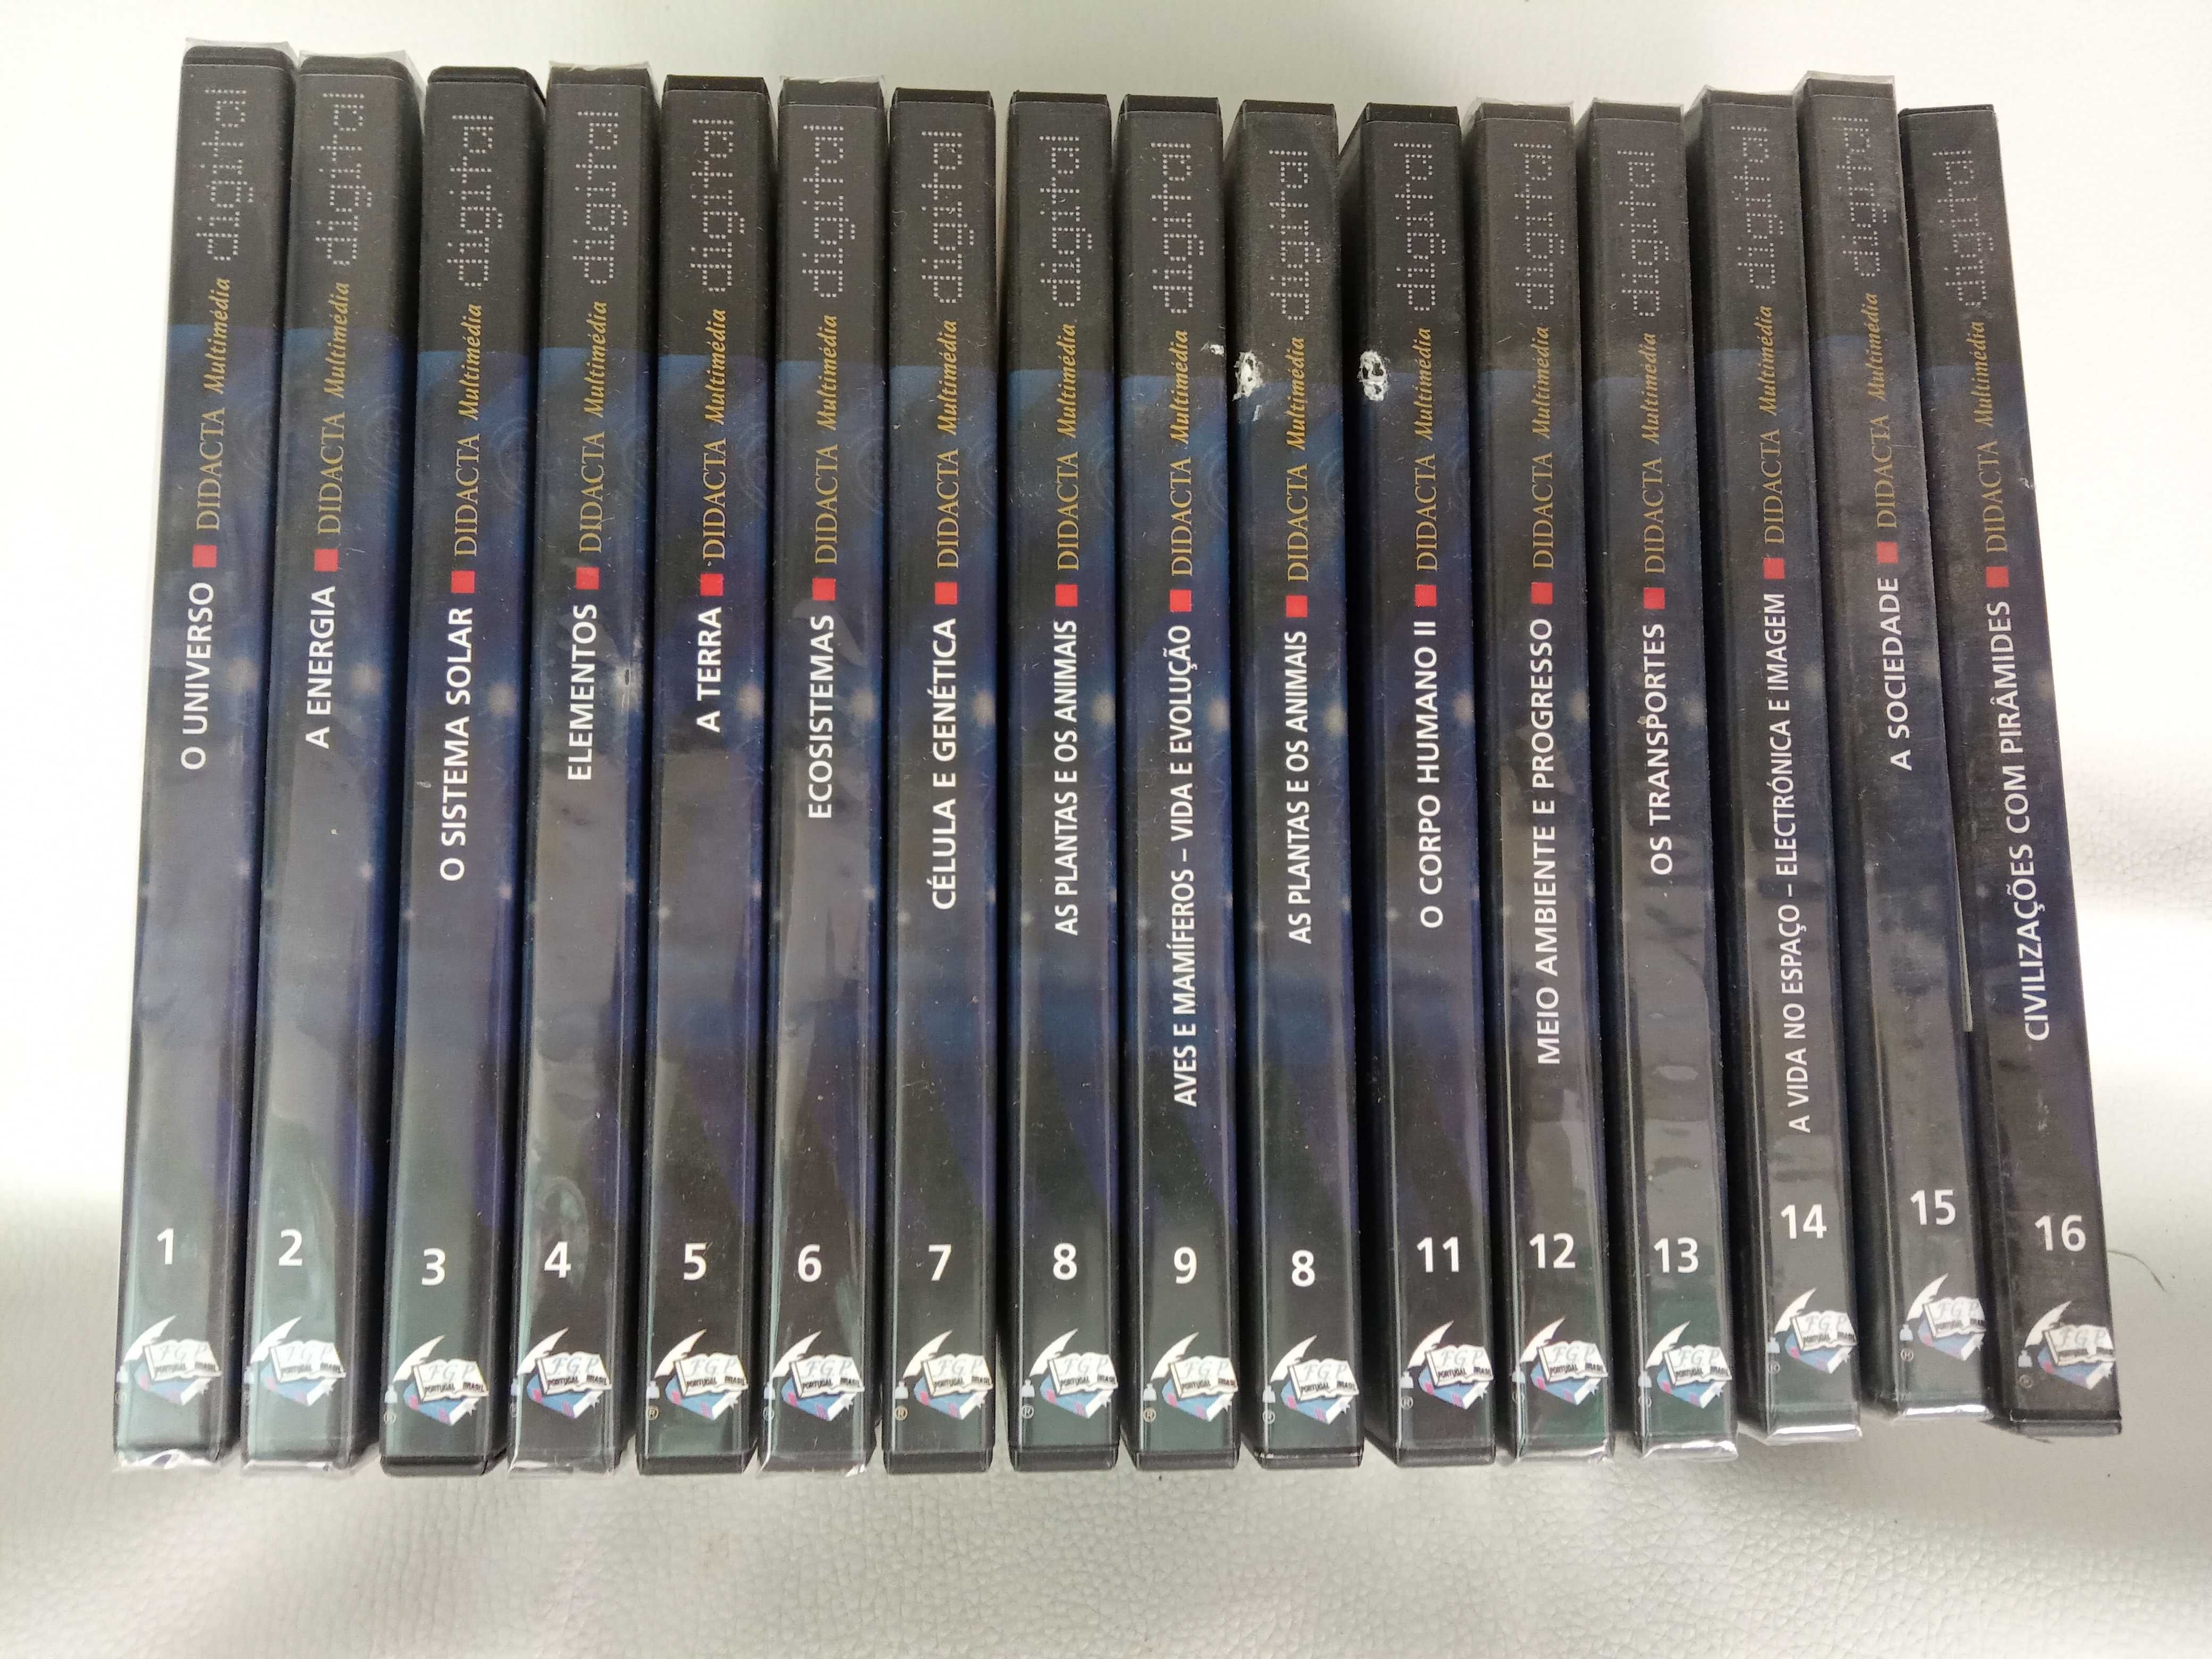 Enciclopédia didacta digital 16 DVDs